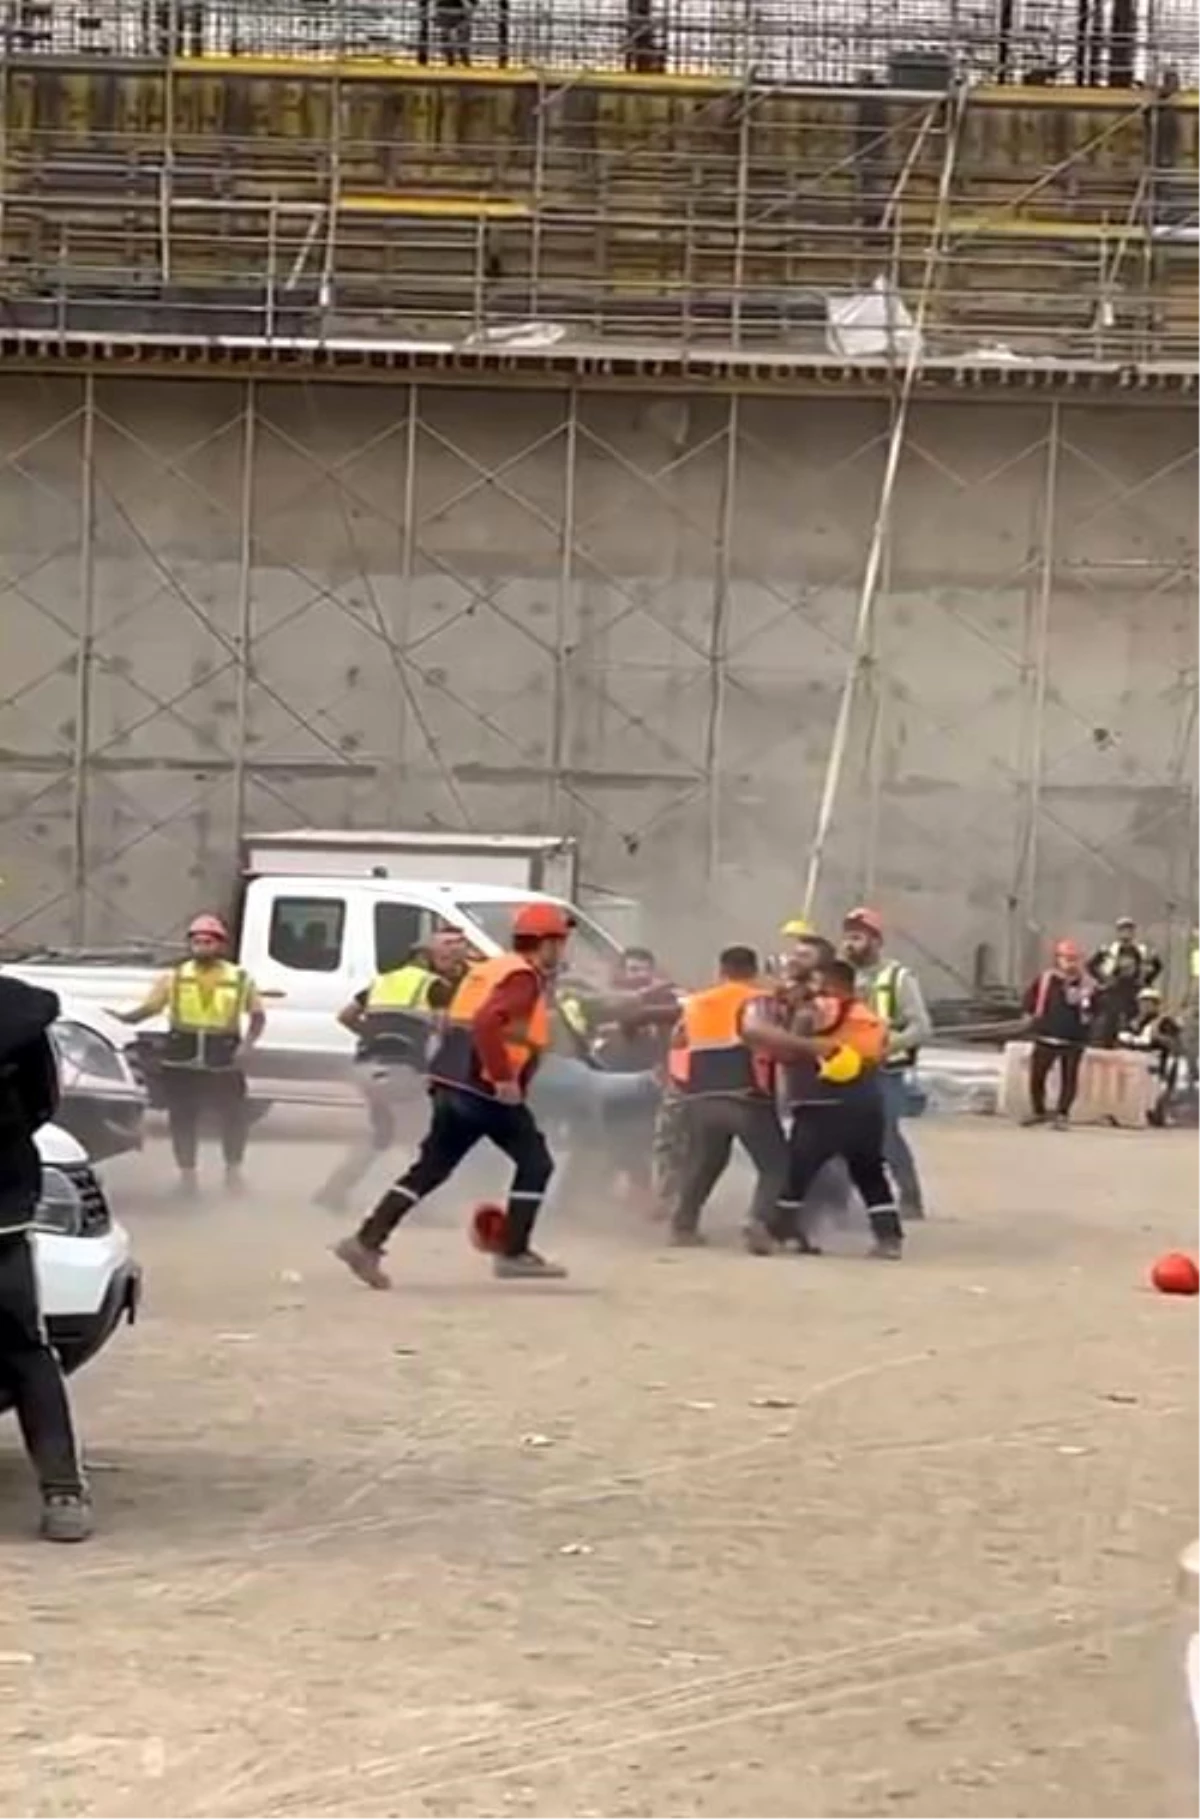 Akkuyu Nükleer Güç Santrali inşaatında işçiler arasında kavga çıktı